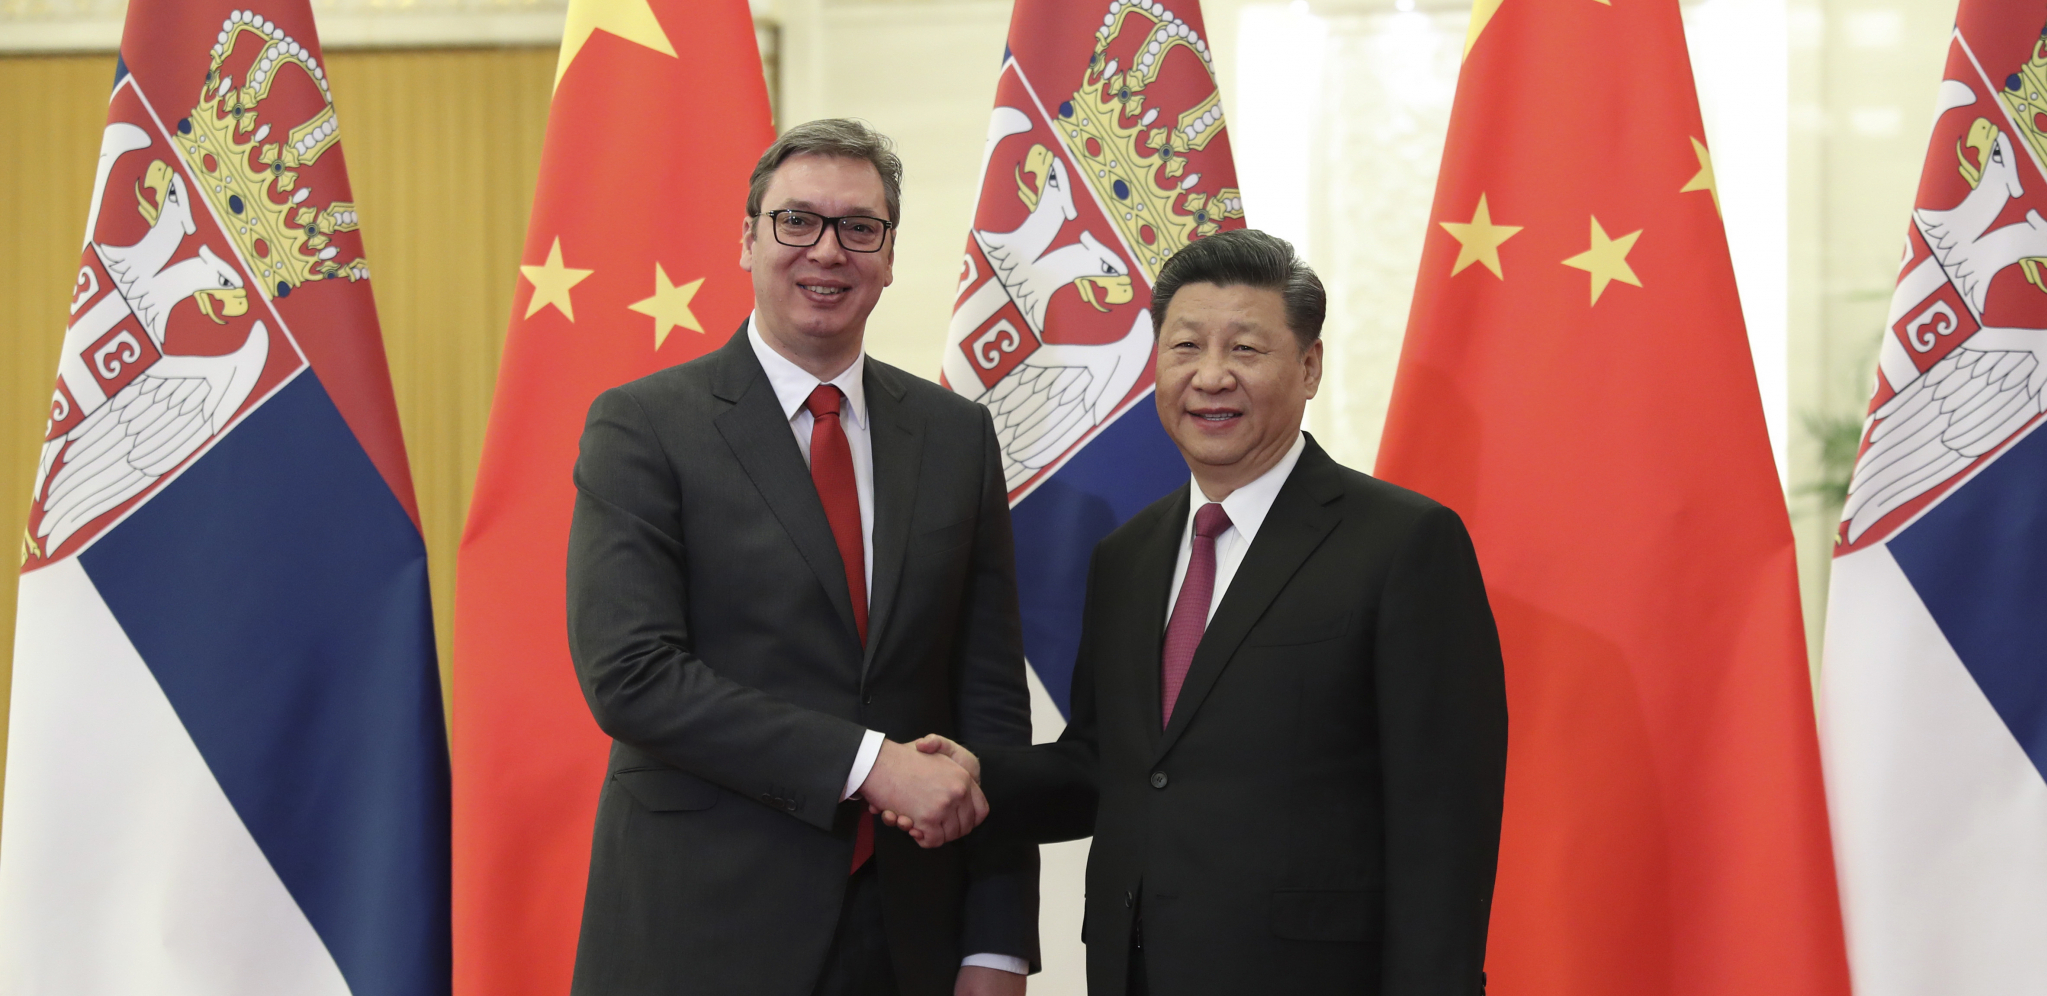 SJAJNE VESTI ZA SRBIJU Veliki dogovor sa Kinom do kraja godine